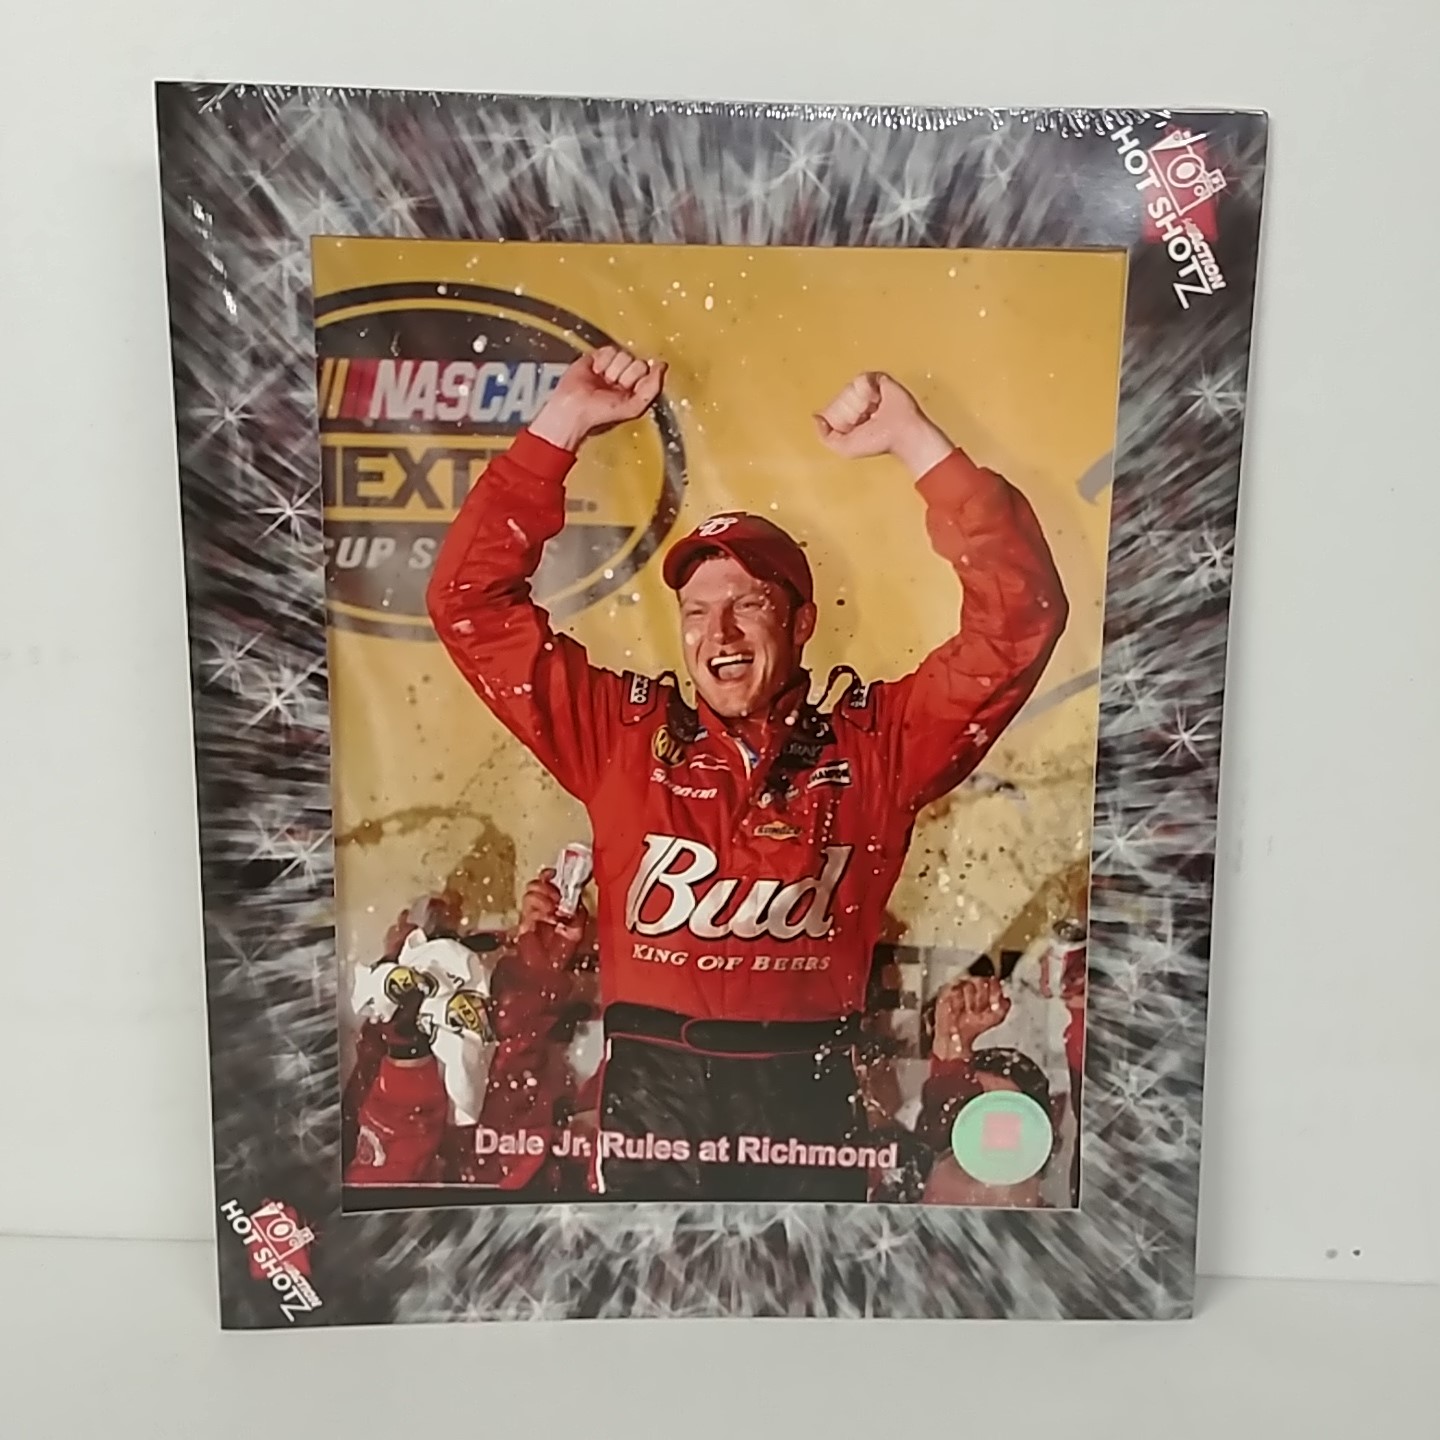 2006 Dale Earnhardt Jr Budweiser "Richmond Win" Hot Shotz photo